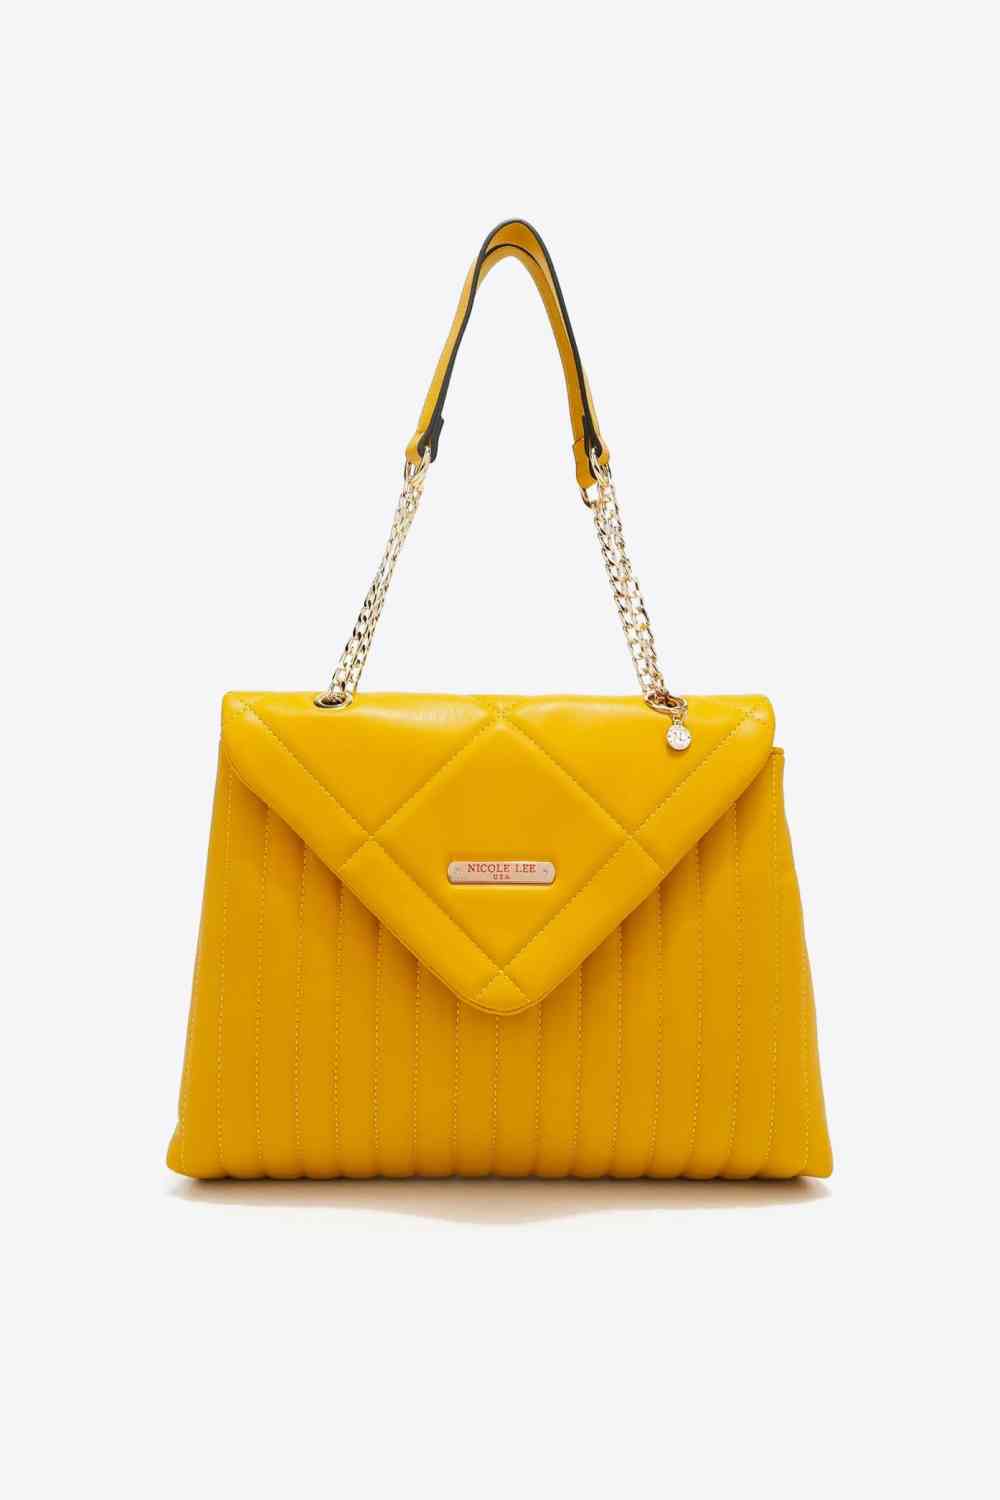 women bag, coach women bag, luxury women bag, women bag guess, women bag for work, ysl women bag